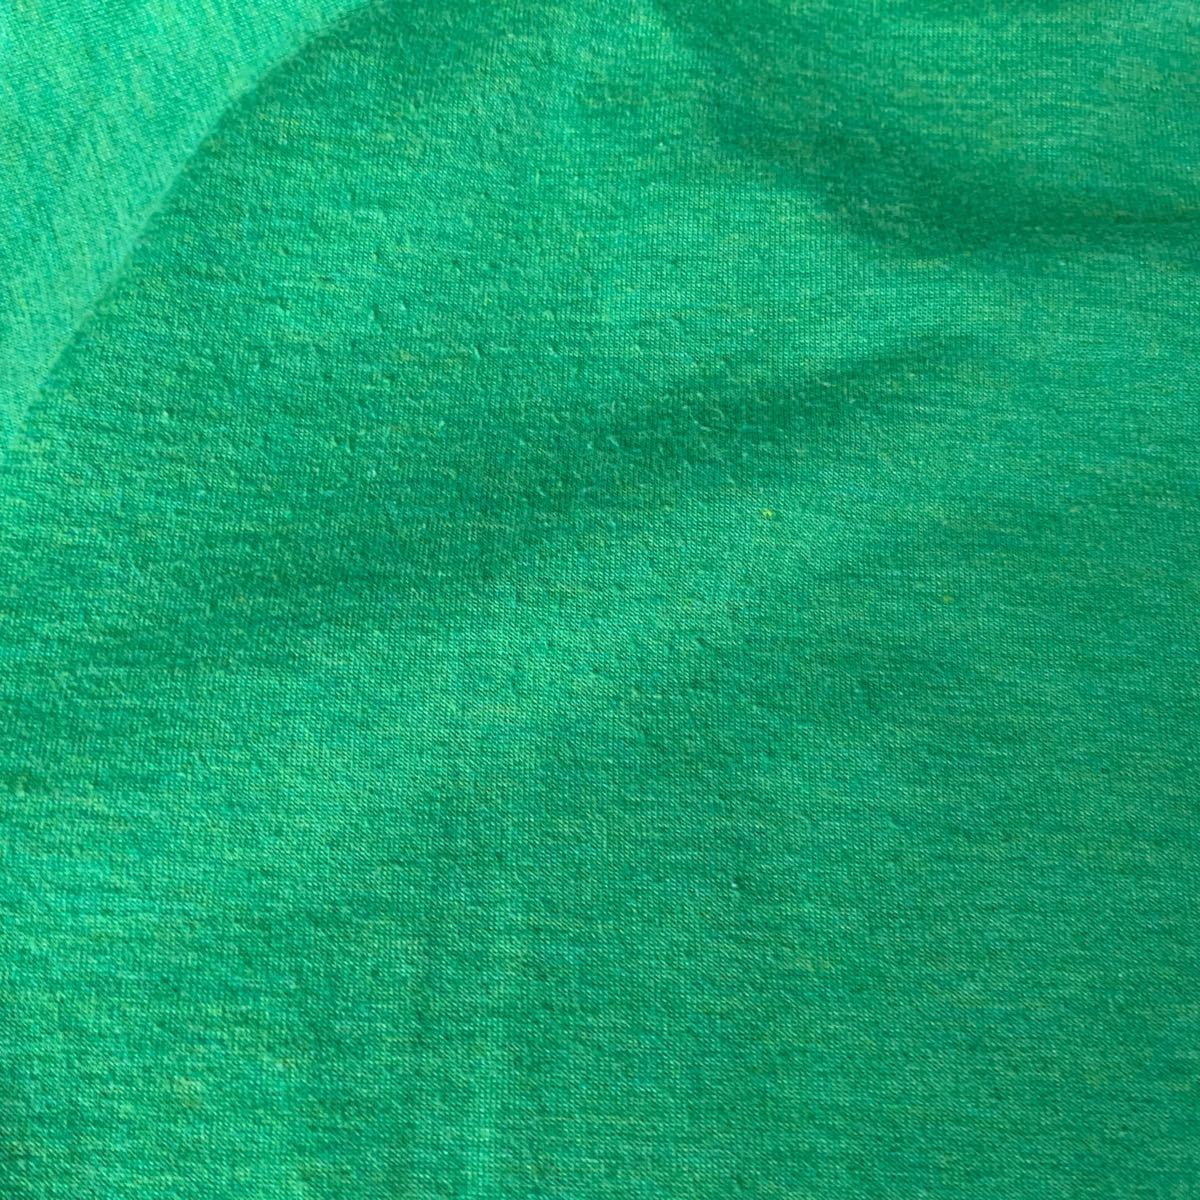 THE NORTH FACE 半袖Tシャツ Mサイズ グリーン NT31570